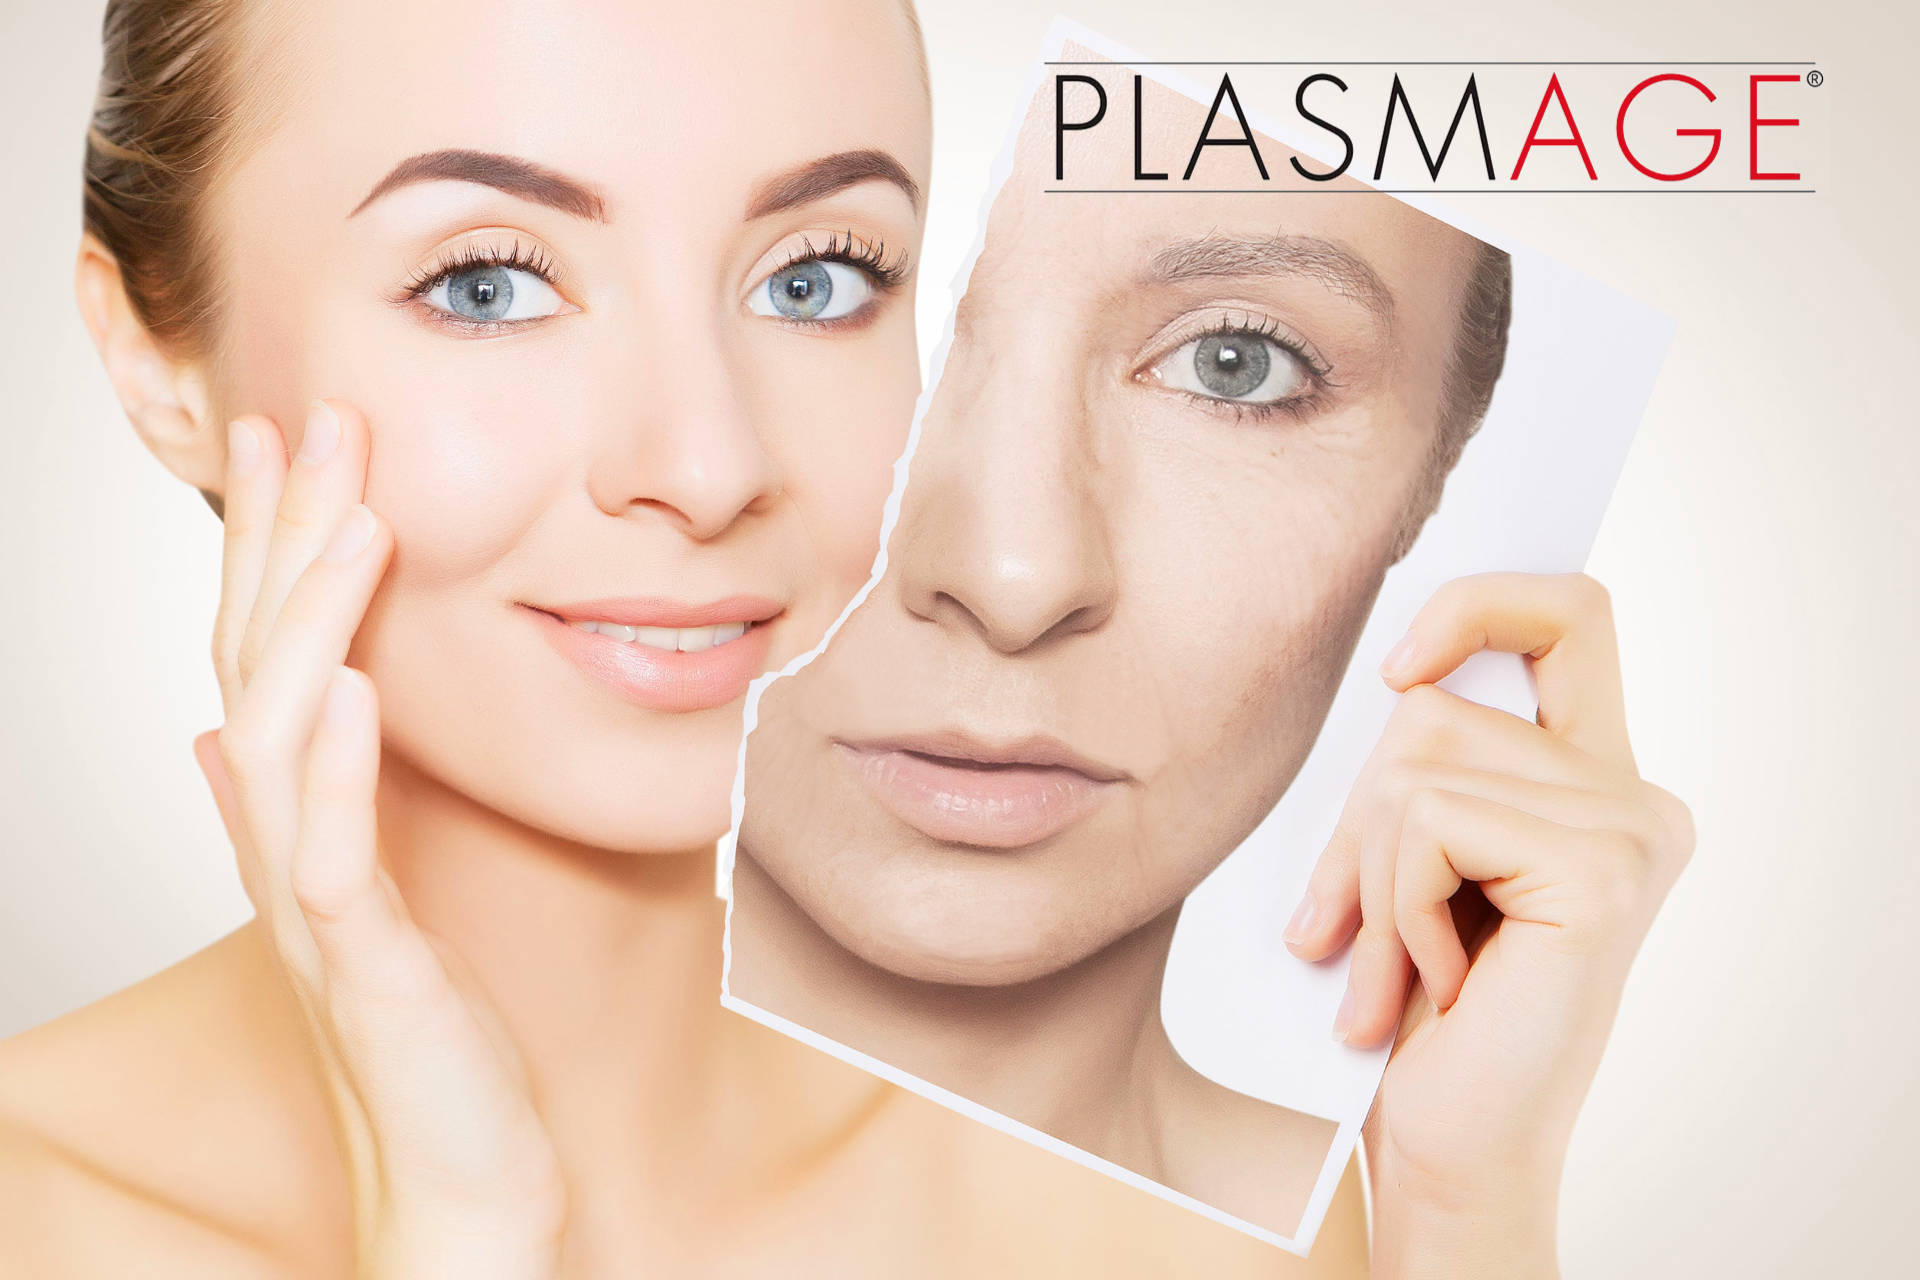 Plasmage - rejuvenecimiento facial con plasma fraccionado, sin cirugía ni marcas - fuera arrugas